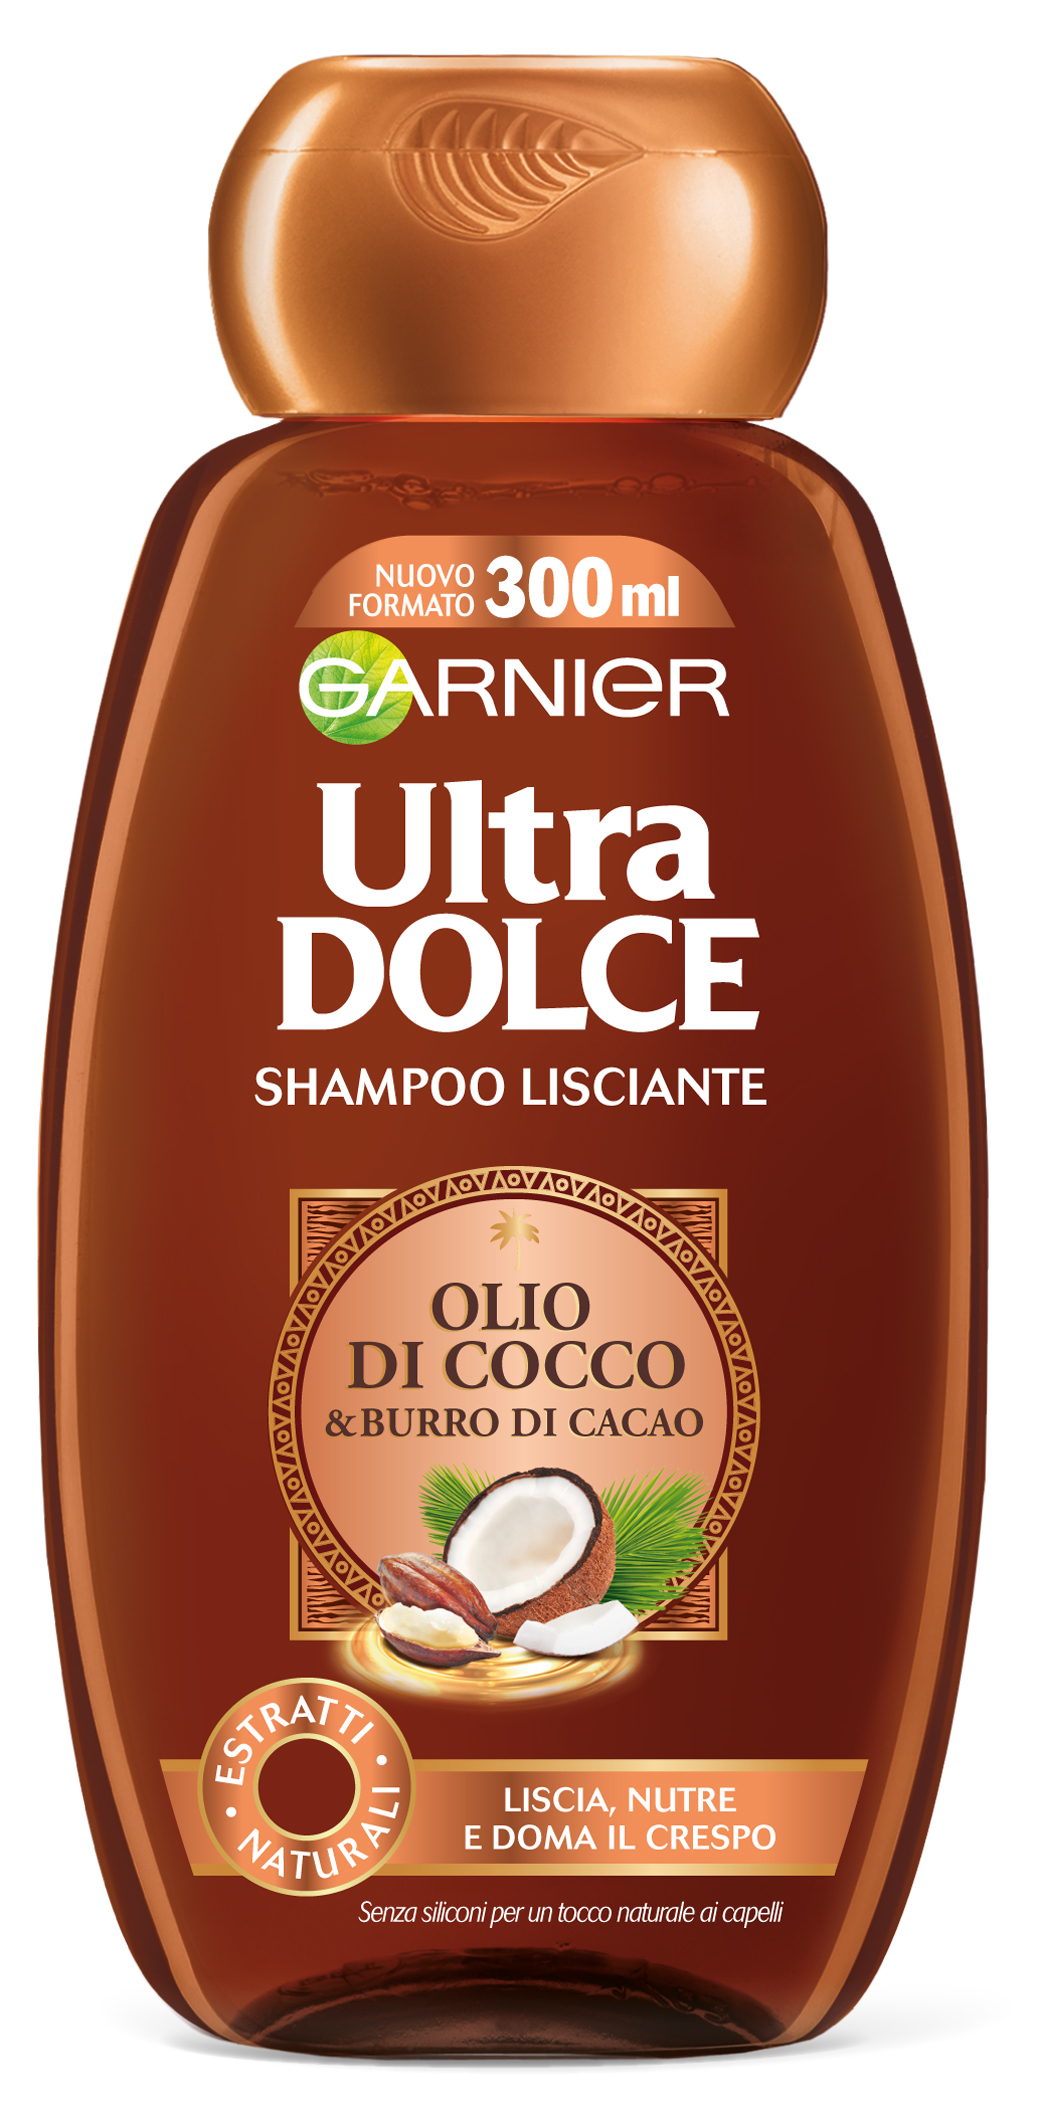 Garnier Ultra Dolce Shampoo Olio di Cocco & Burro di Cacao